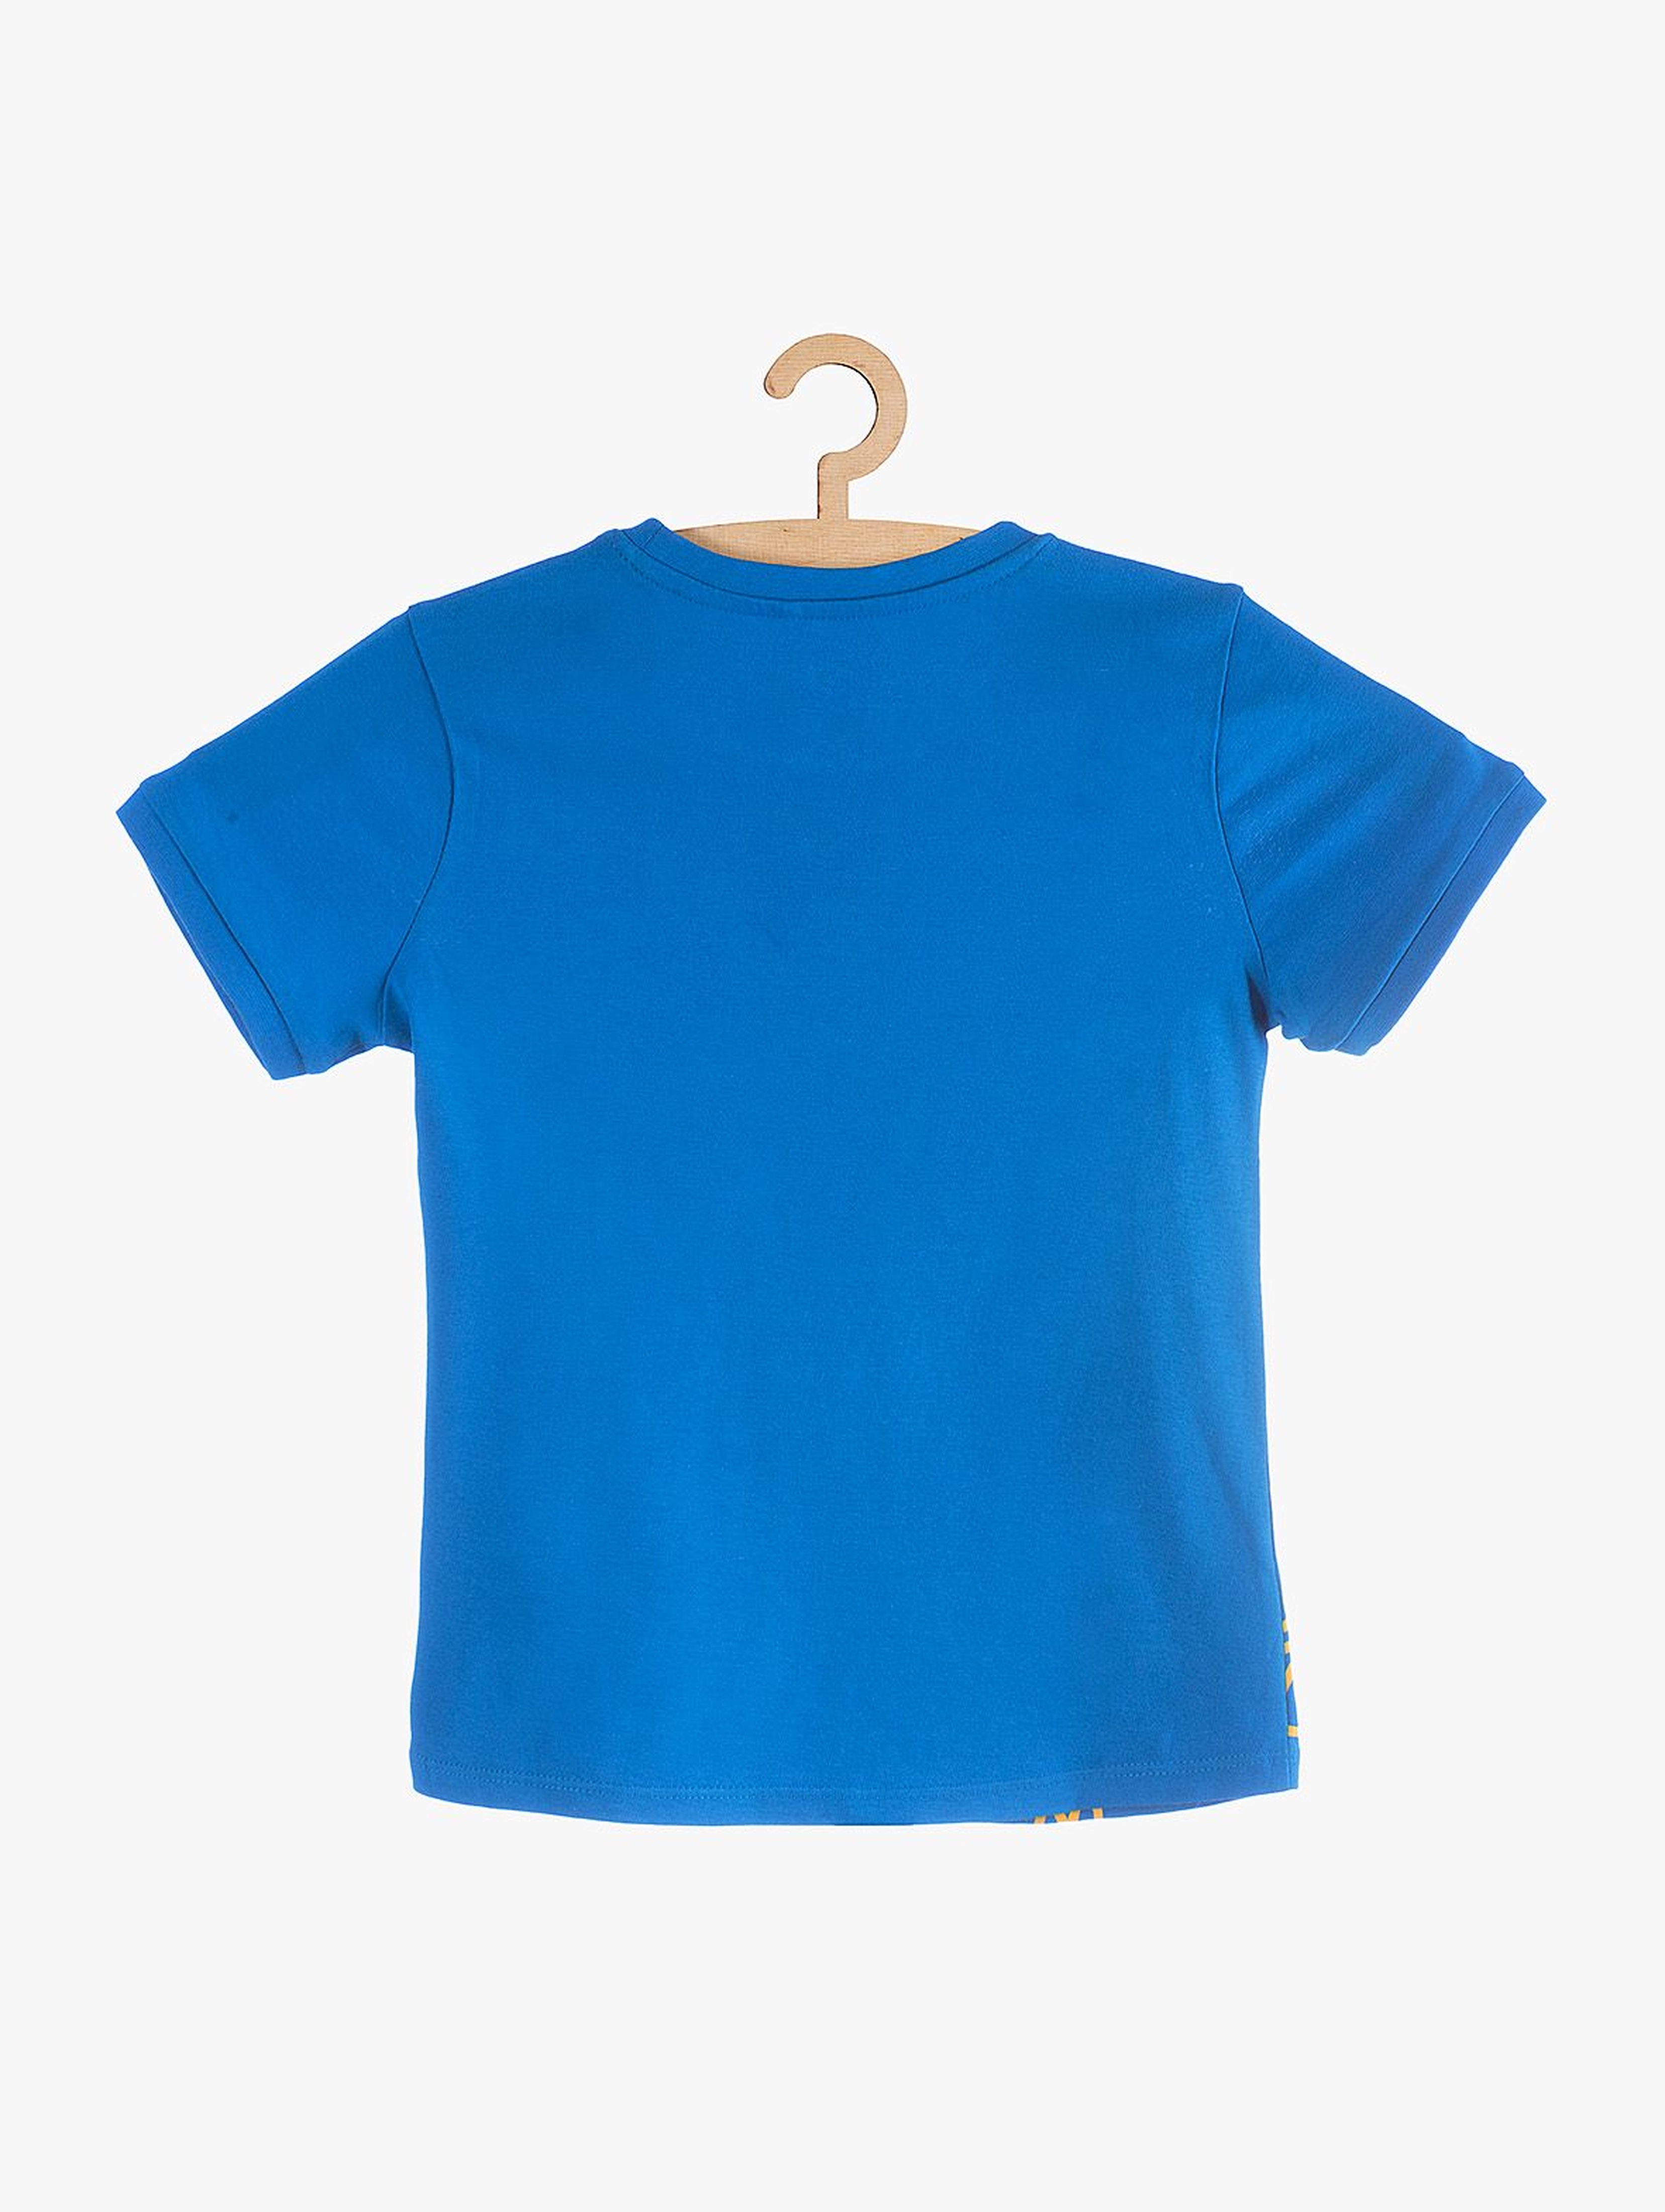 T-Shirt chłopięcy niebieski z nadrukowaną piłką do koszykówki